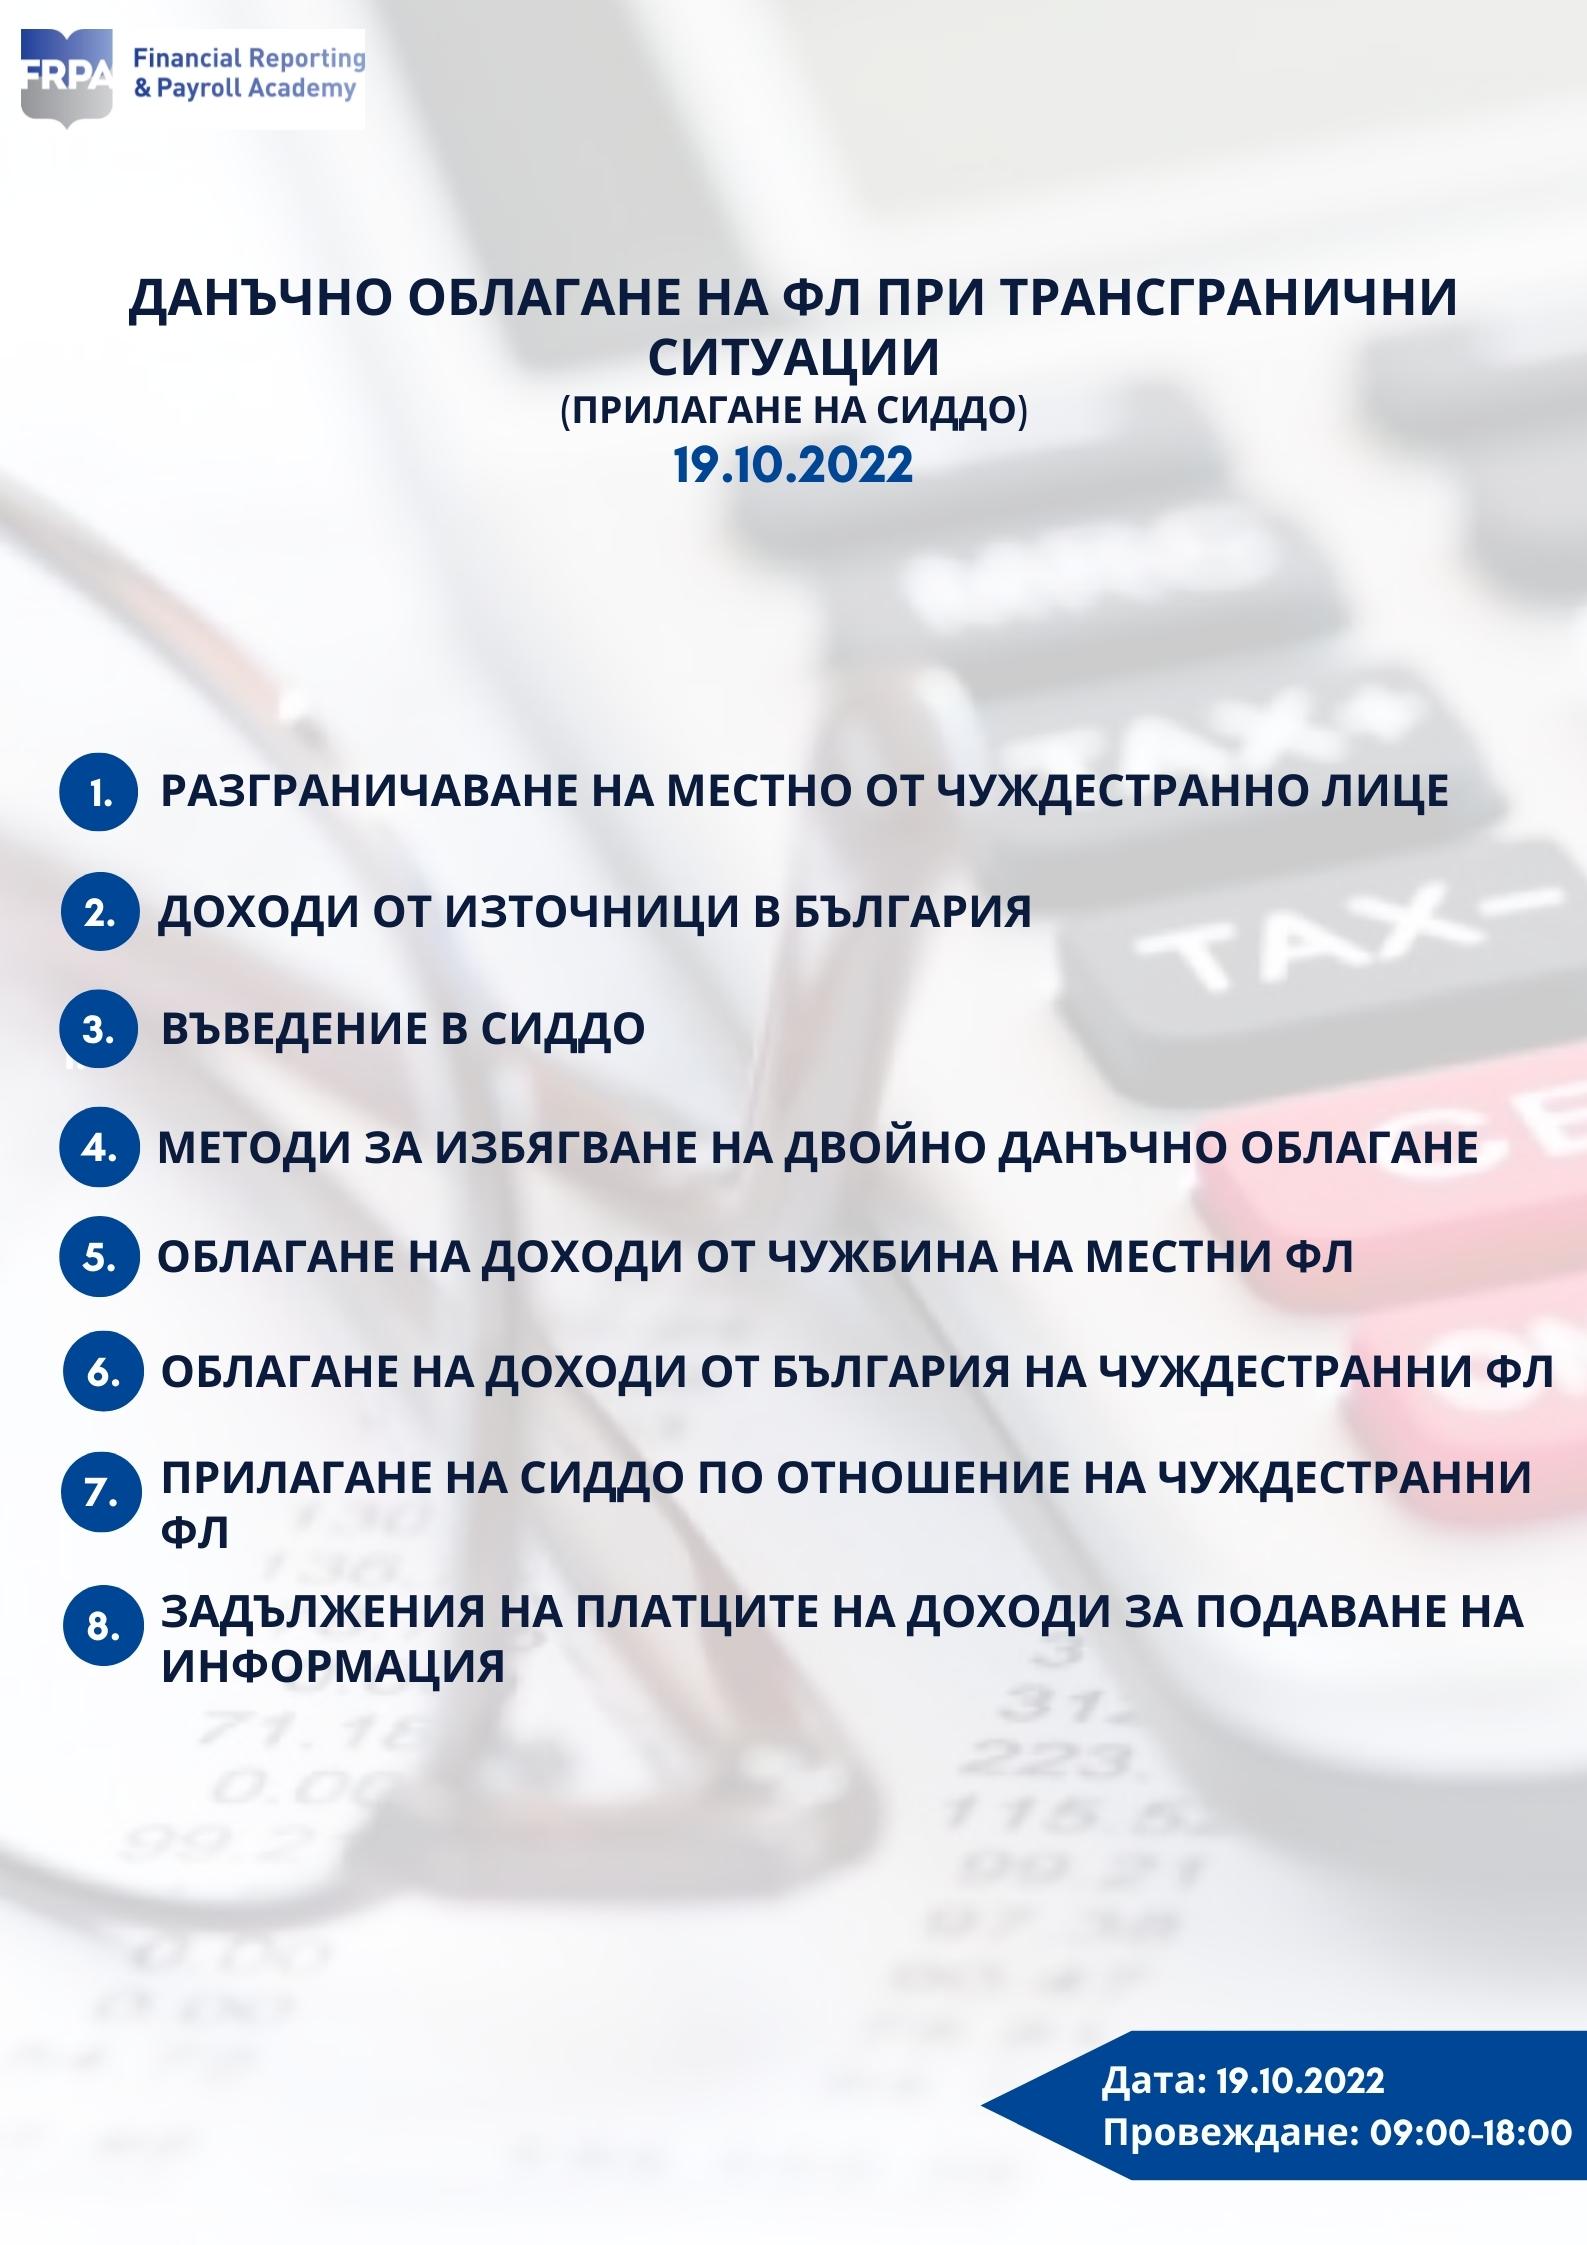 Данъчно облагане на ФЛ при трангранични ситуации (прилагане на СИДДО), 19.10.2022